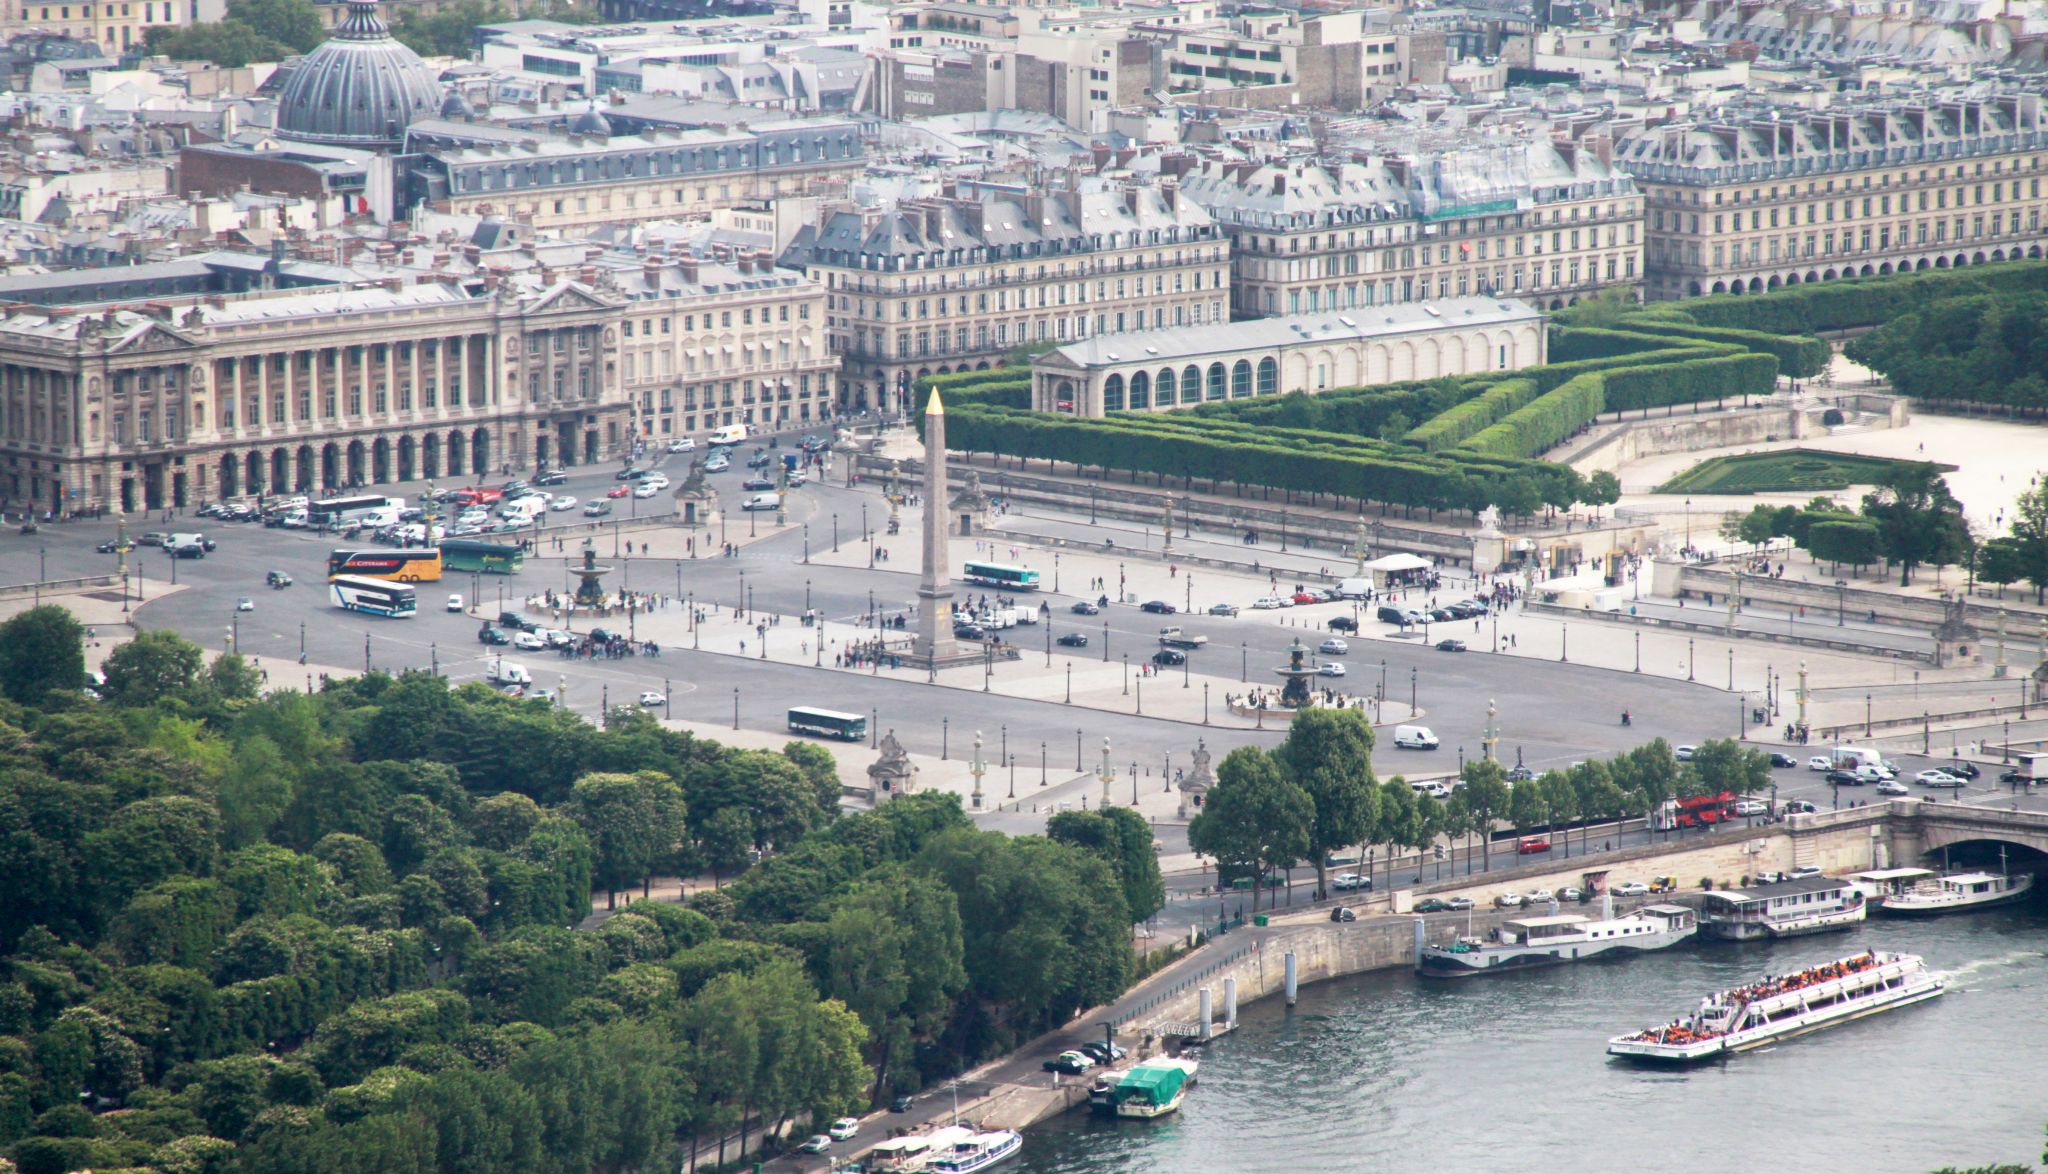 Place-de-la-Concorde in Paris